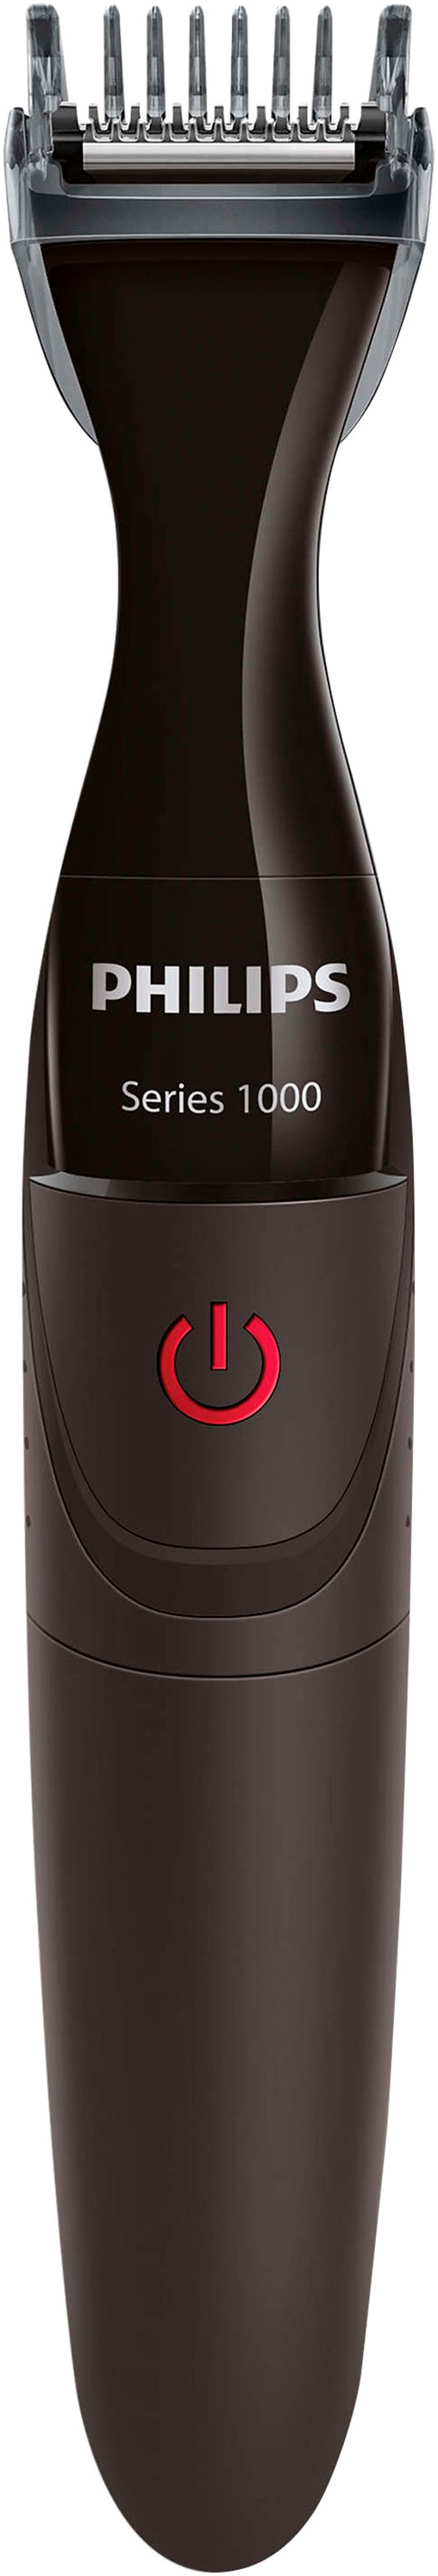 Philips Multifunktionstrimmer »Series 1000 MG1100/16«, 3 Aufsätze, abwaschbar, mit DualCut-Präzisionstrimmer und 3 Präzisionskämme